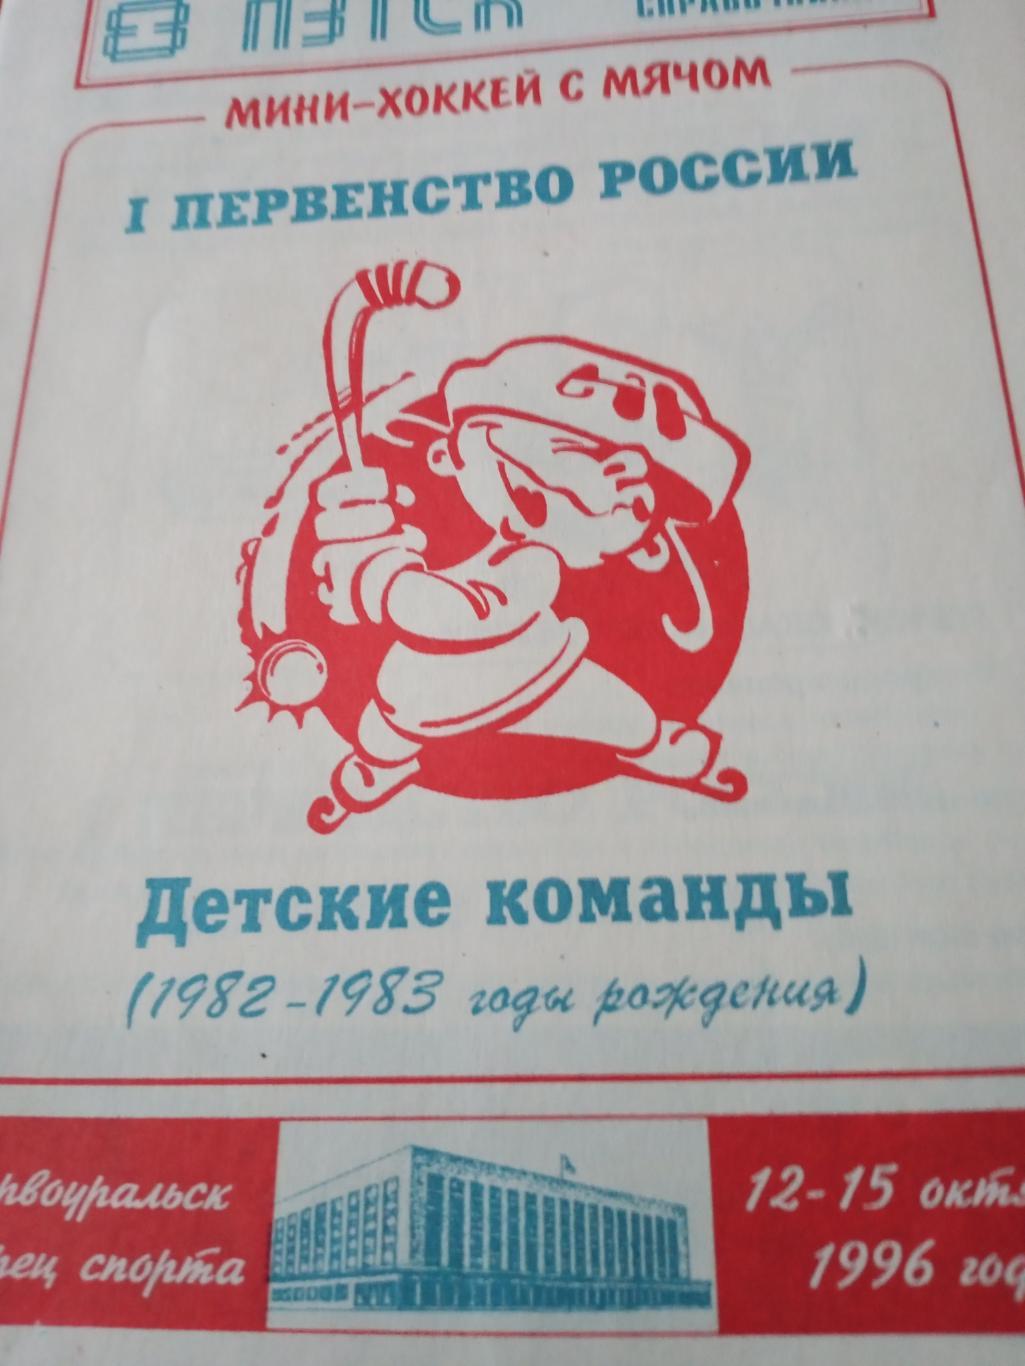 1 первенство России по мини-хоккею с мячом. Первоуральск. Детские команды 1982-8